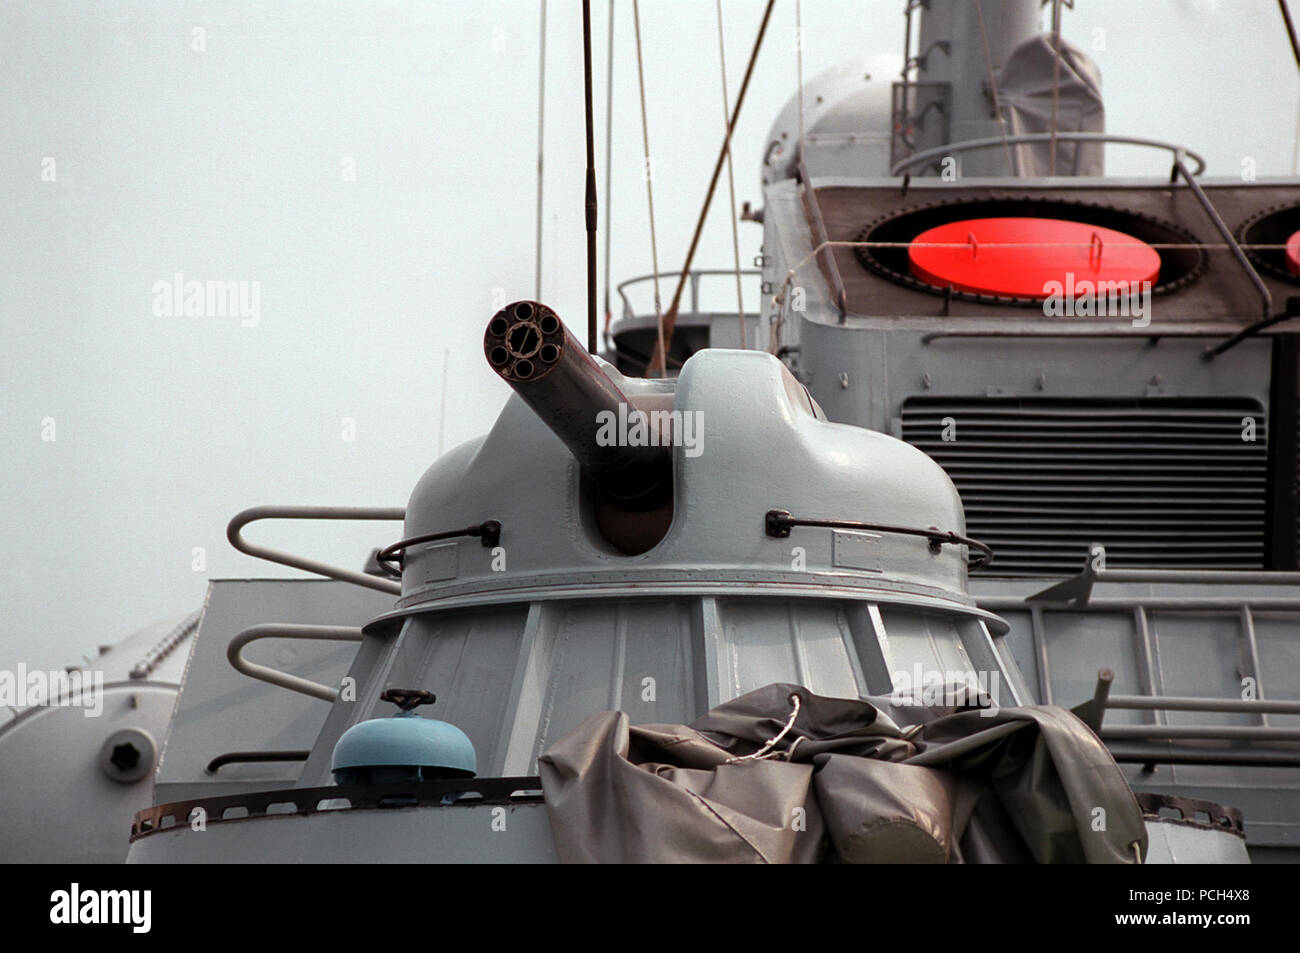 Sehen sie eine der AK-630 30mm/65 Kaliber multi-Zylinder schließen - in Waffensysteme an Bord der USNS HIDDENSEE (185 NS 9201) an der Naval Sea facility Systems Befehl an Solomons Anhang vertäut. Die von der Sowjetunion gebaut Tarantul I Klasse Rakete Corvette wurde von der Deutschen Marine im November 1991 erworben, und sich derzeit in Erprobung und Bewertung durch die U.S. Navy. Mit dem Namen Rudolf Egelhofer, als es ein Teil der DDR-Marine war, wurde das Schiff HIDDENSEE nach der Wiedervereinigung Deutschlands im Jahre 1990 umbenannt. Stockfoto